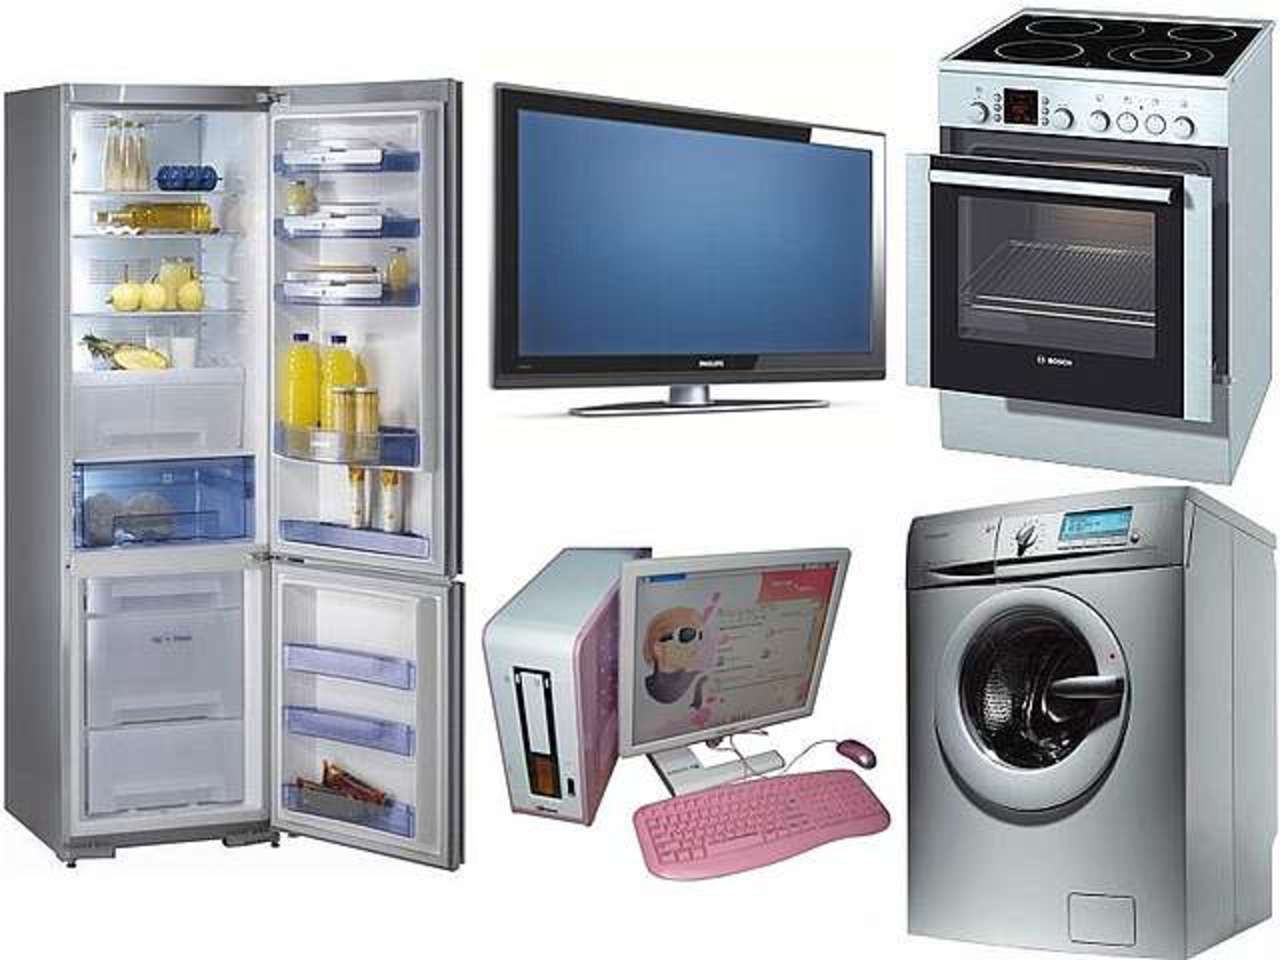 Телевизор машинка стиральная. Бытовая техника. Телевизор холодильник стиральная машина. Бытовые машины и приборы. Кухня с бытовой техникой.